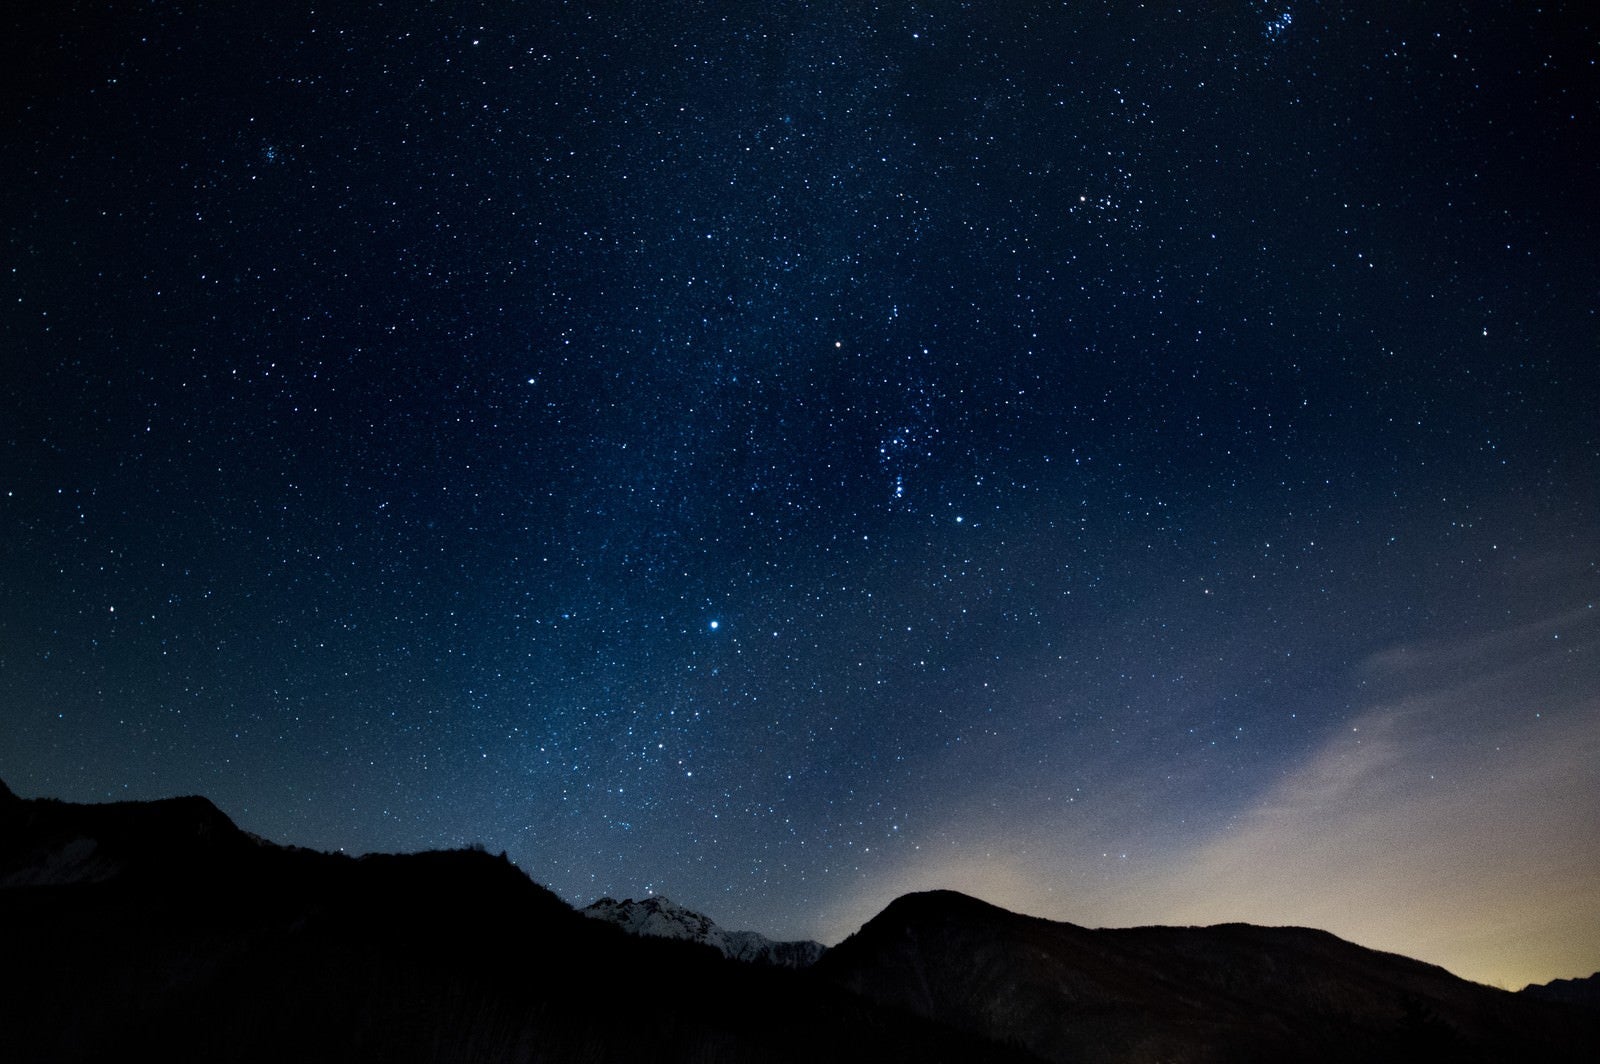 「星空がキレイな北アルプス」の写真